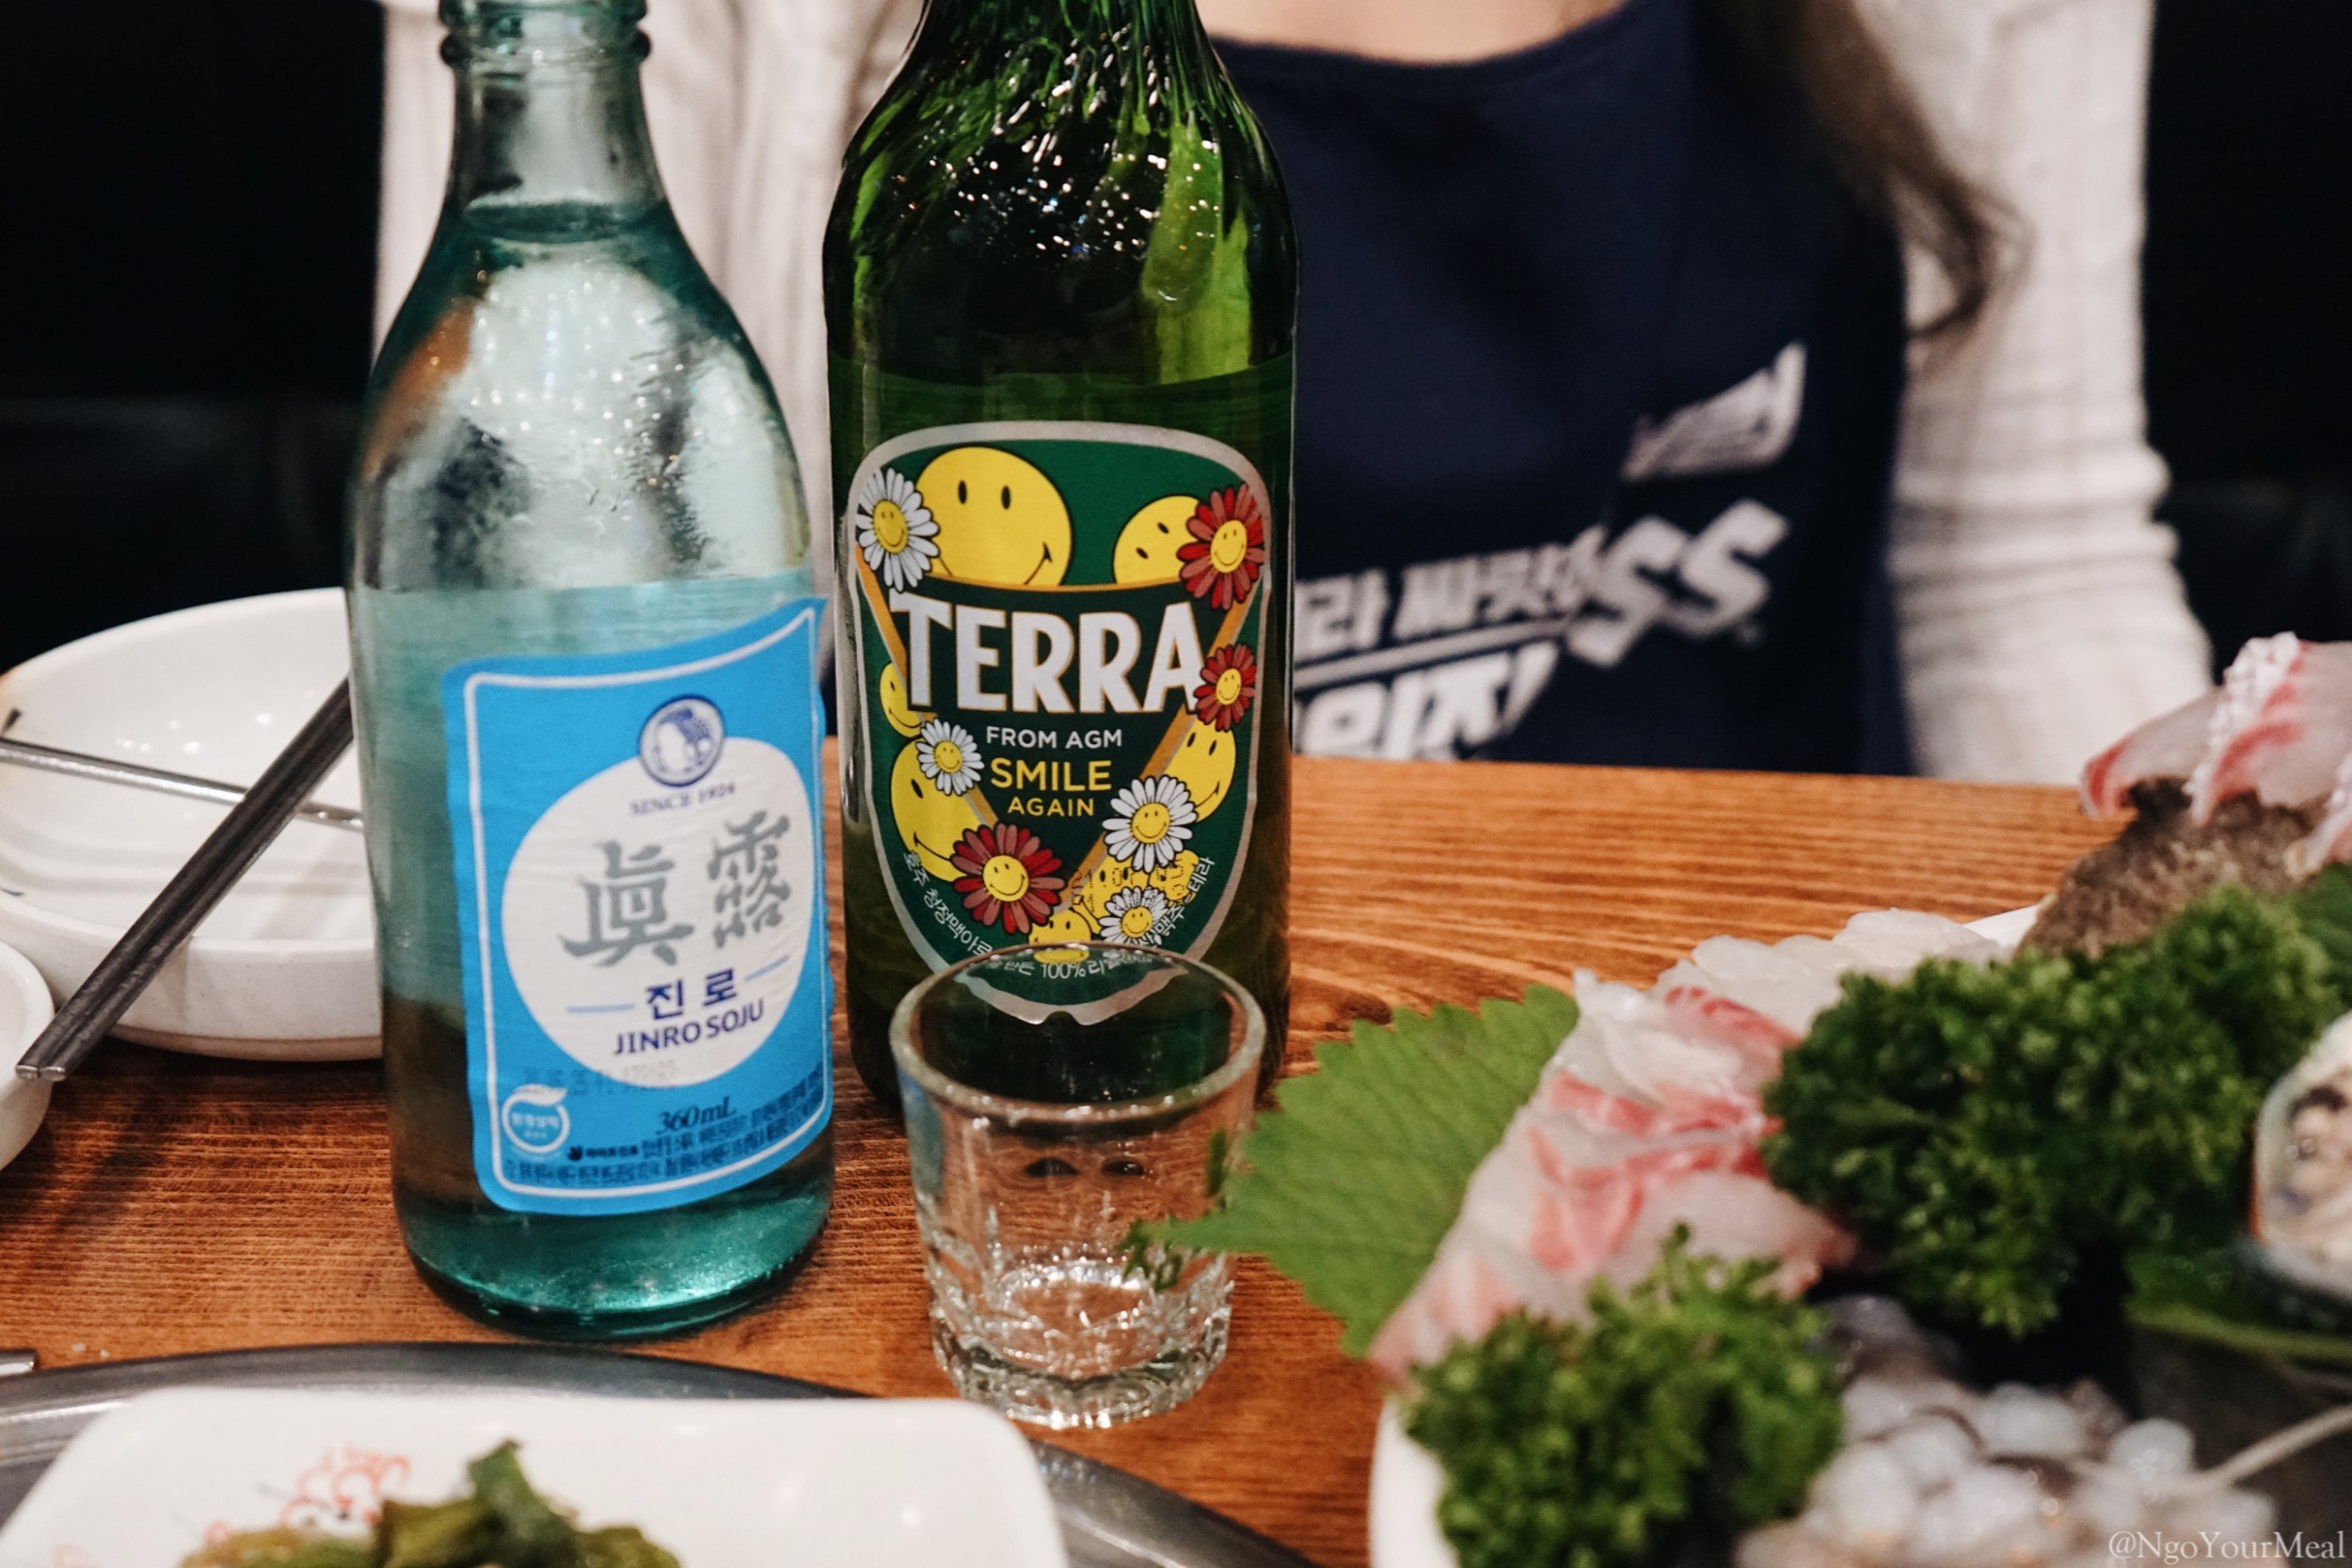 Jinro Soju and Terra Beer 